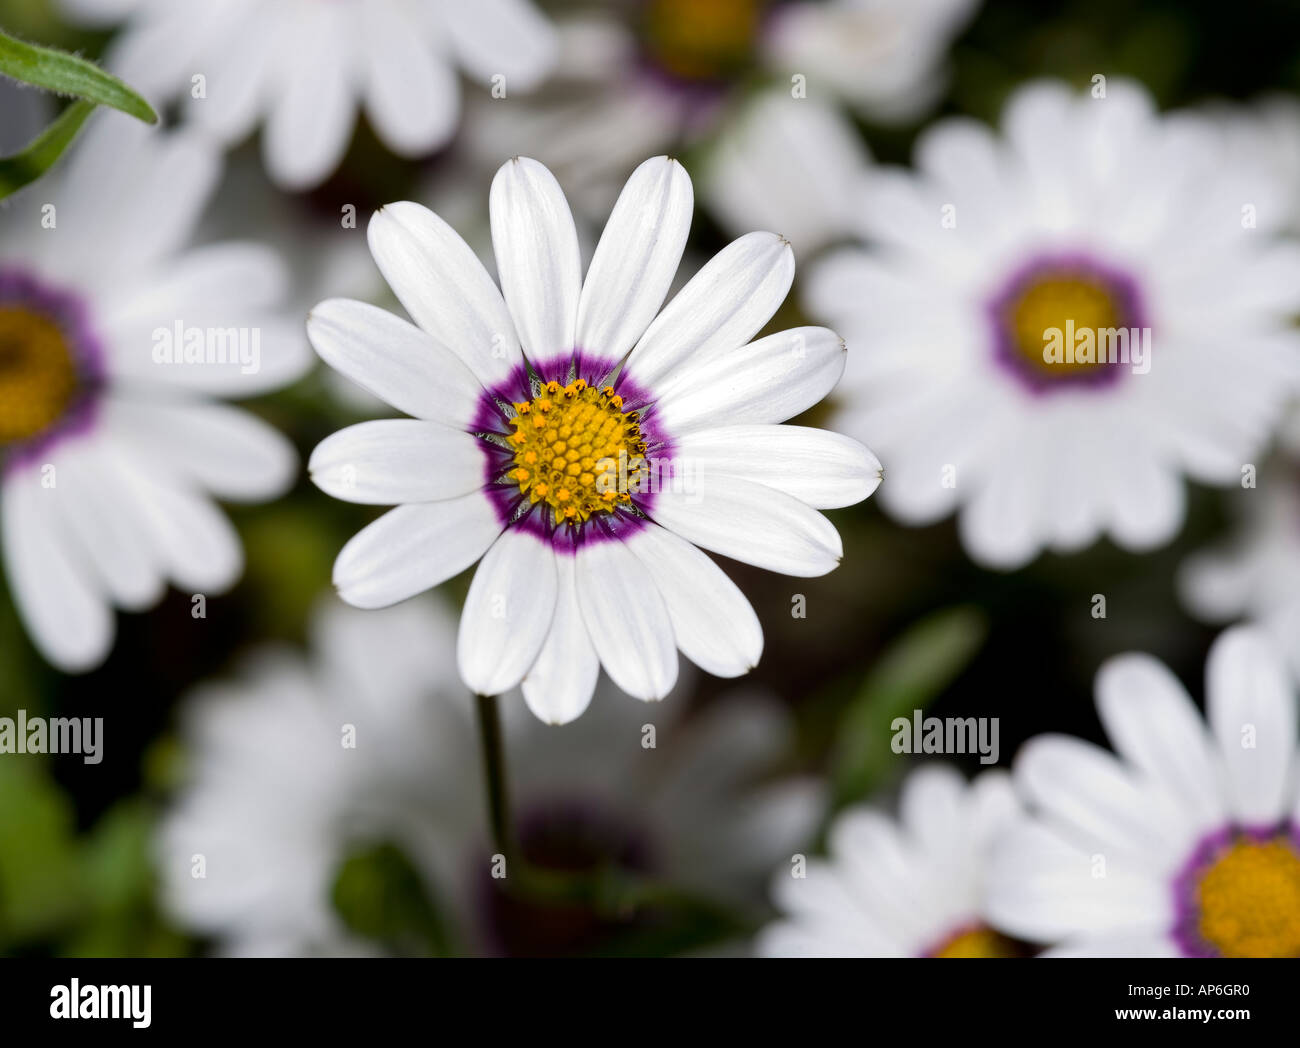 Rain Daisy (Dimorphotheca pluvialis) Stock Photo